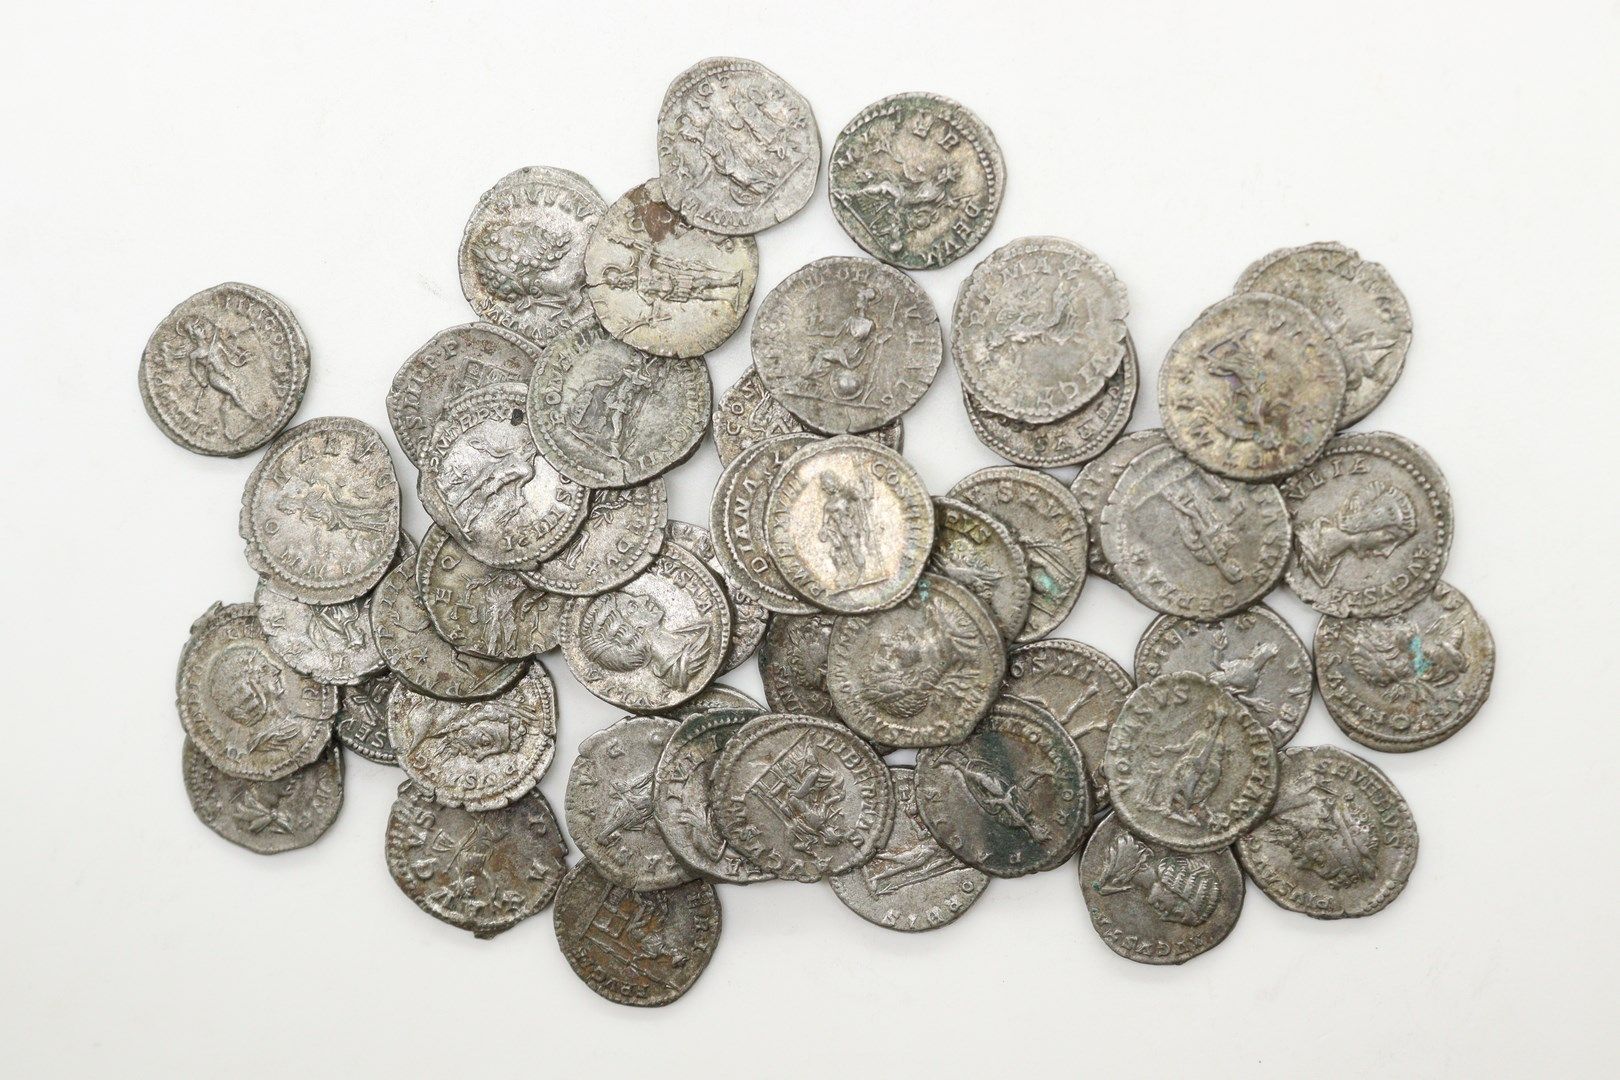 Null A VARIOS AFICIONADOS

MONEDAS ROMANAS

Lote de 48 denarios de plata 

Aleja&hellip;